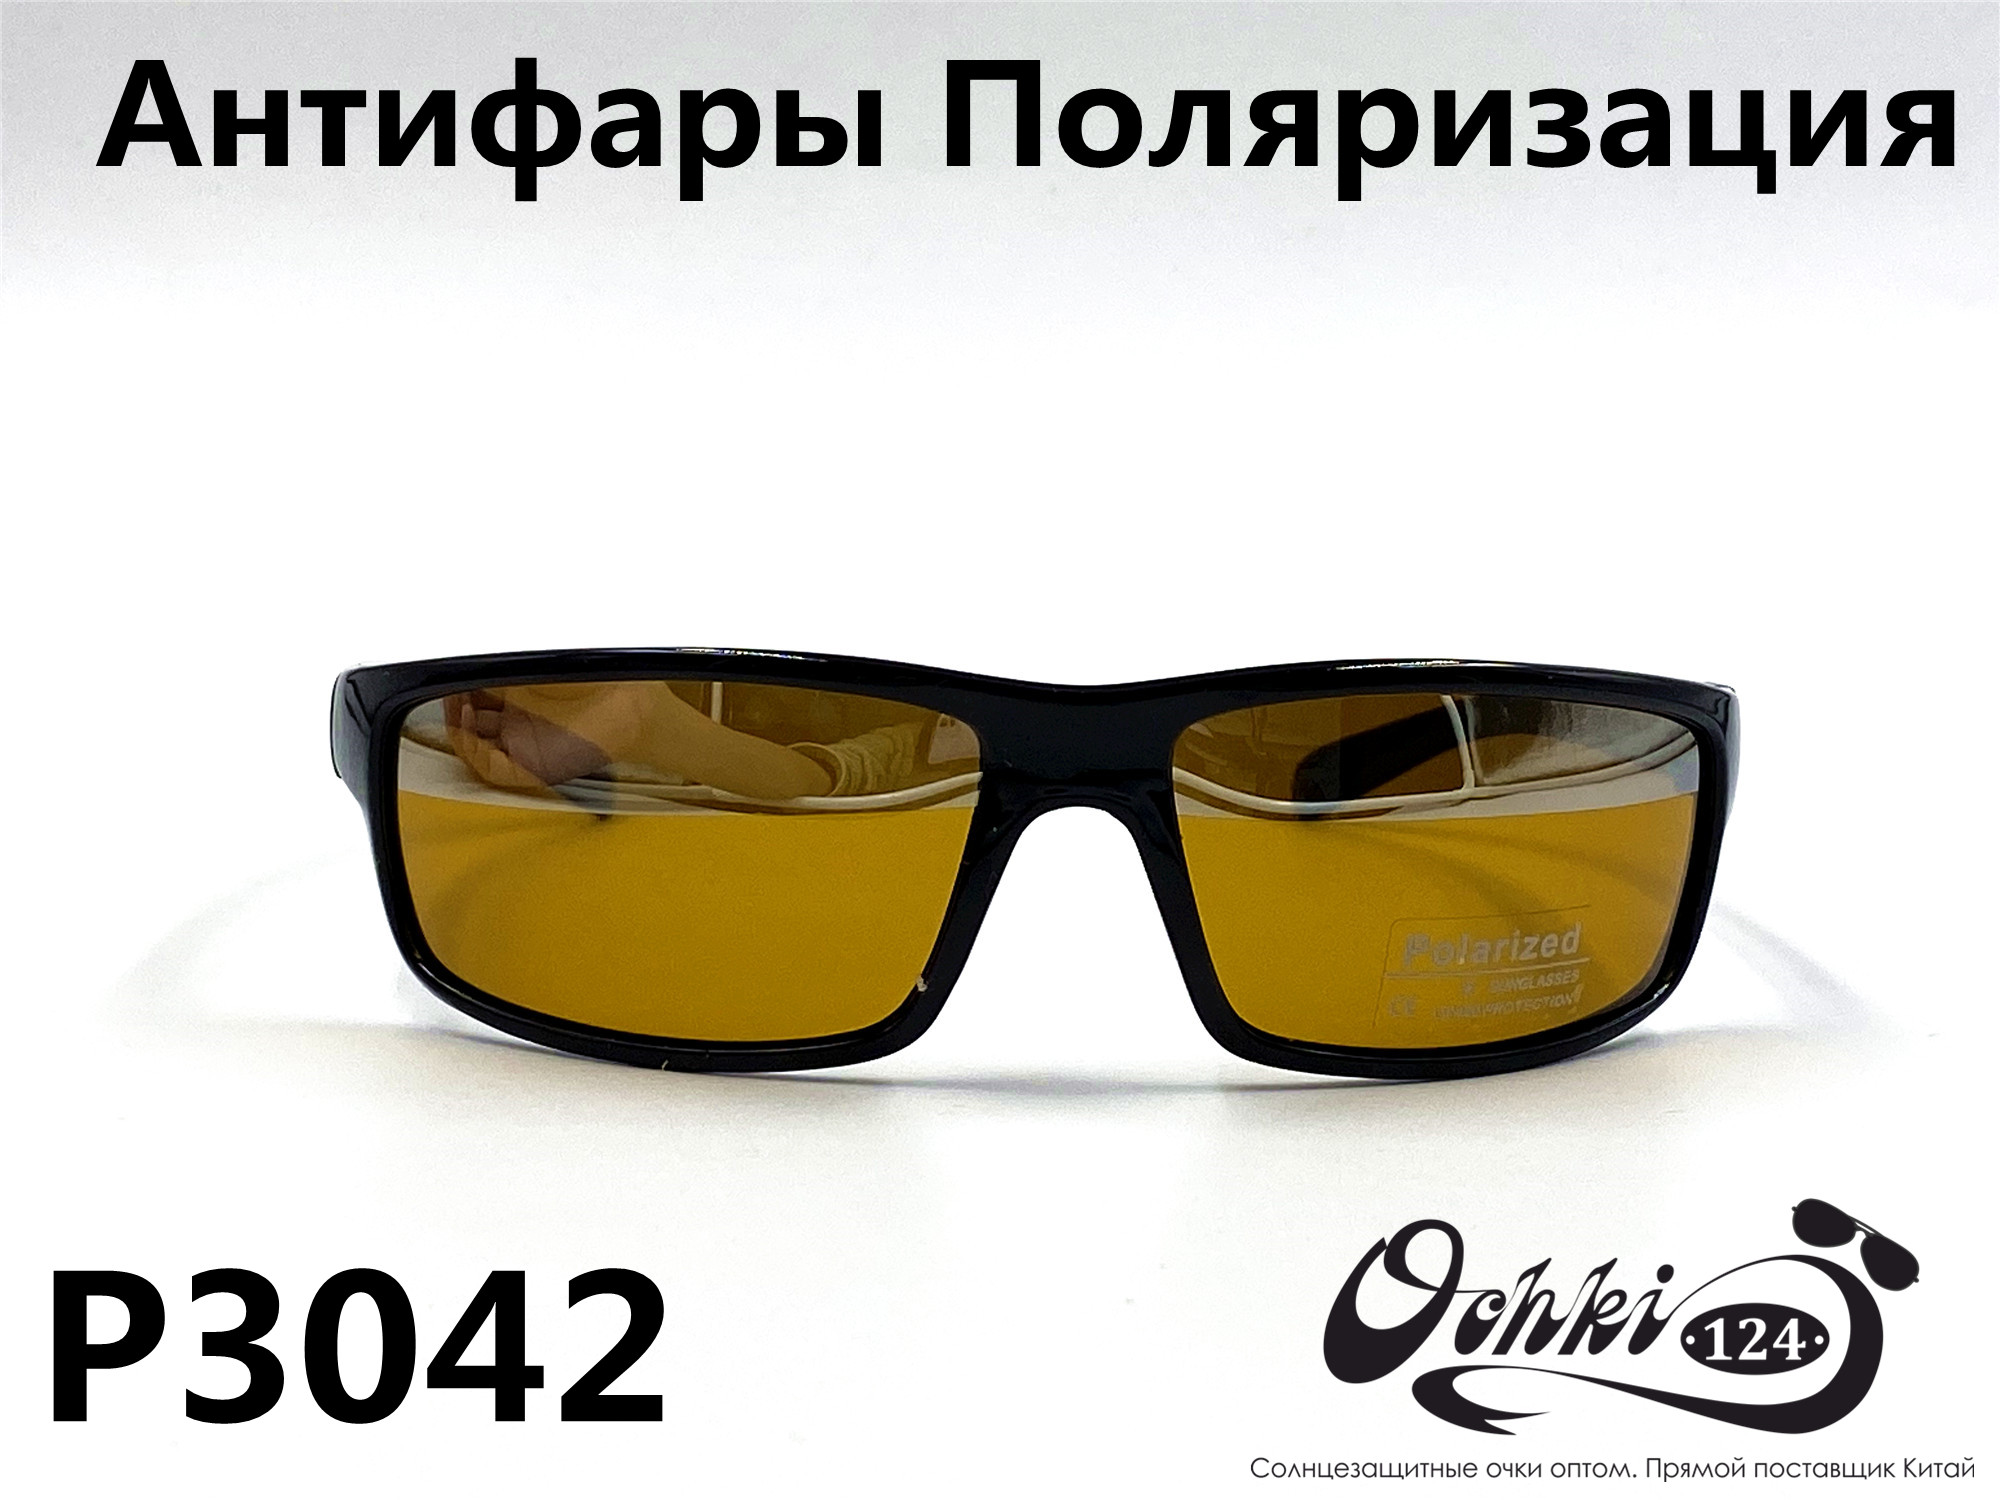  Солнцезащитные очки картинка 2022 Мужские антифары-спорт, с зеркальной полосой, Желтый Polarized P3042-2 